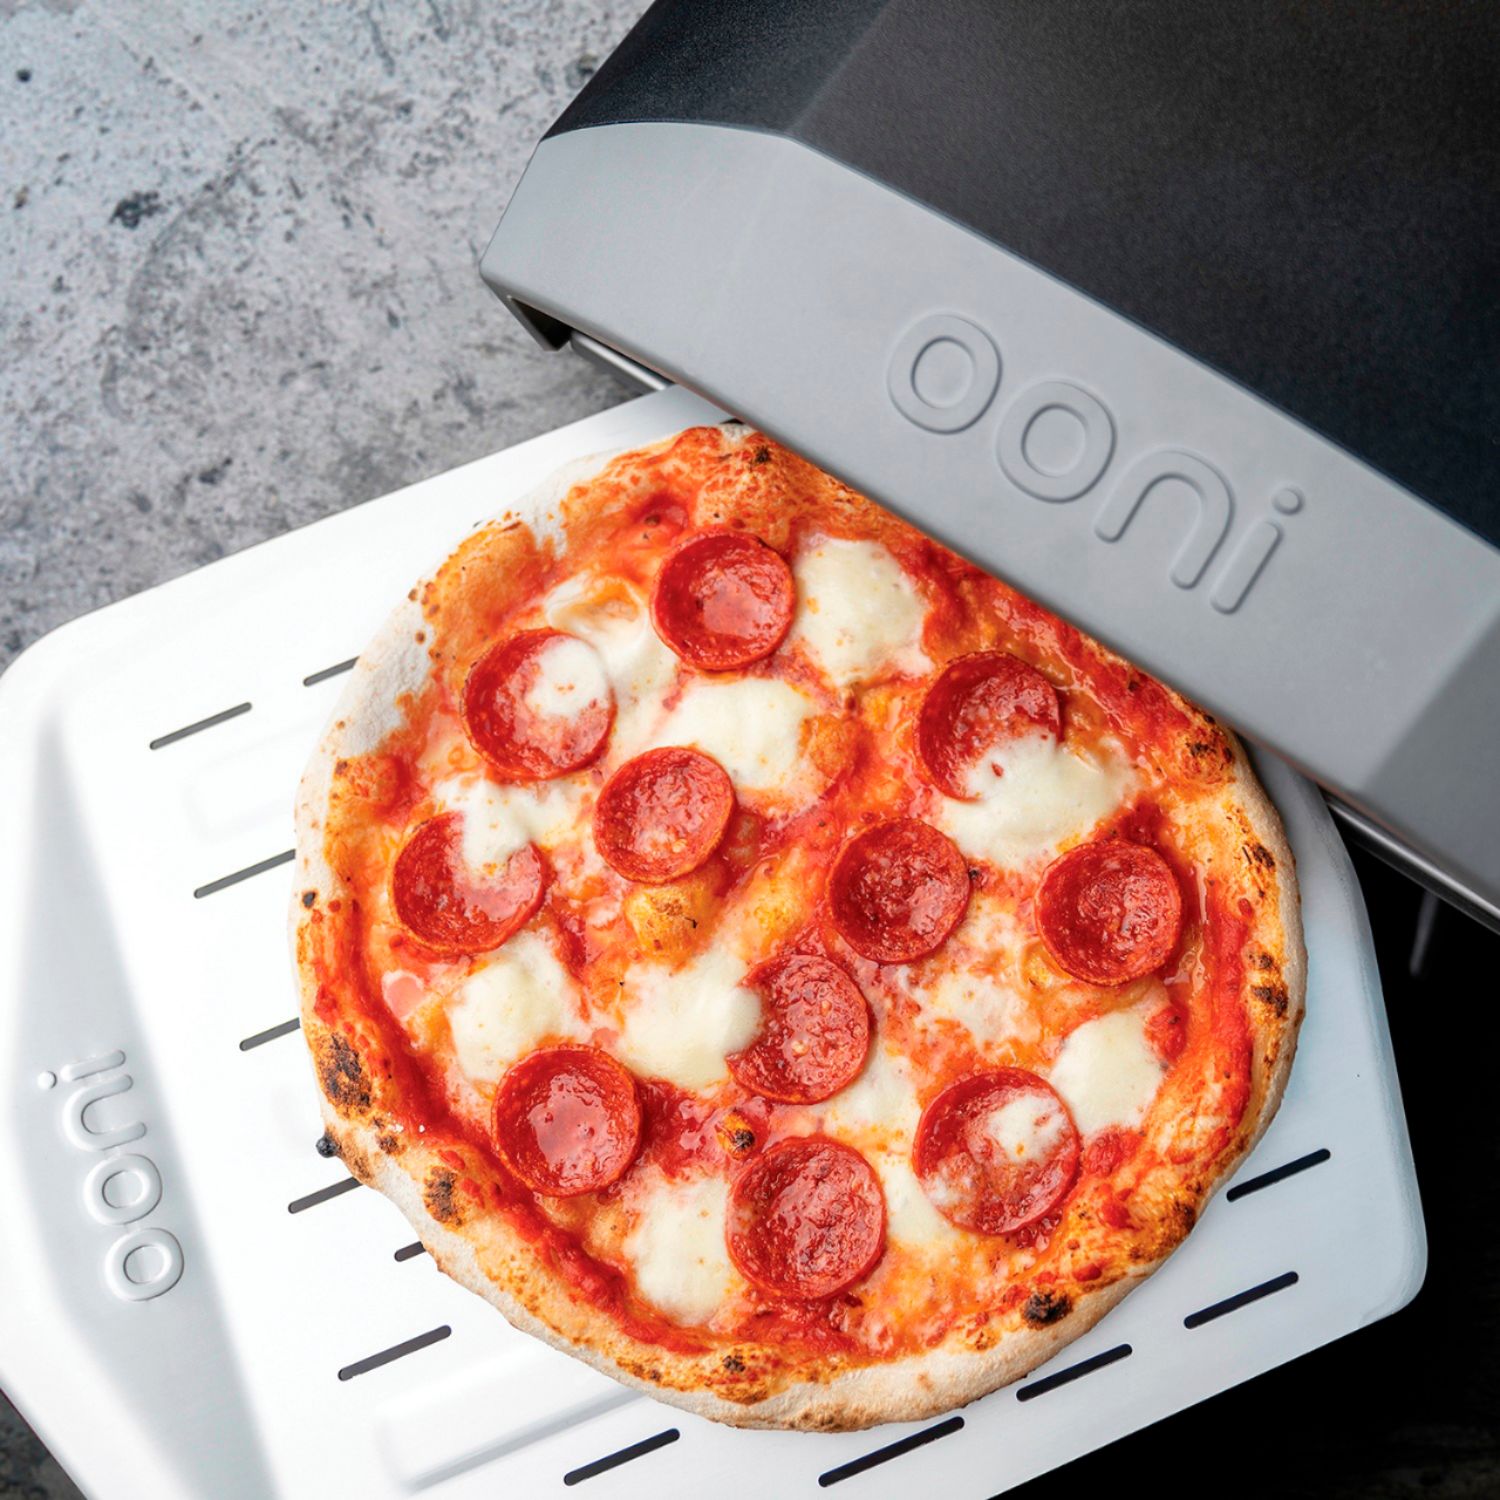 Ooni Koda 12 Gas-Powered Outdoor Pizza Oven Bundle